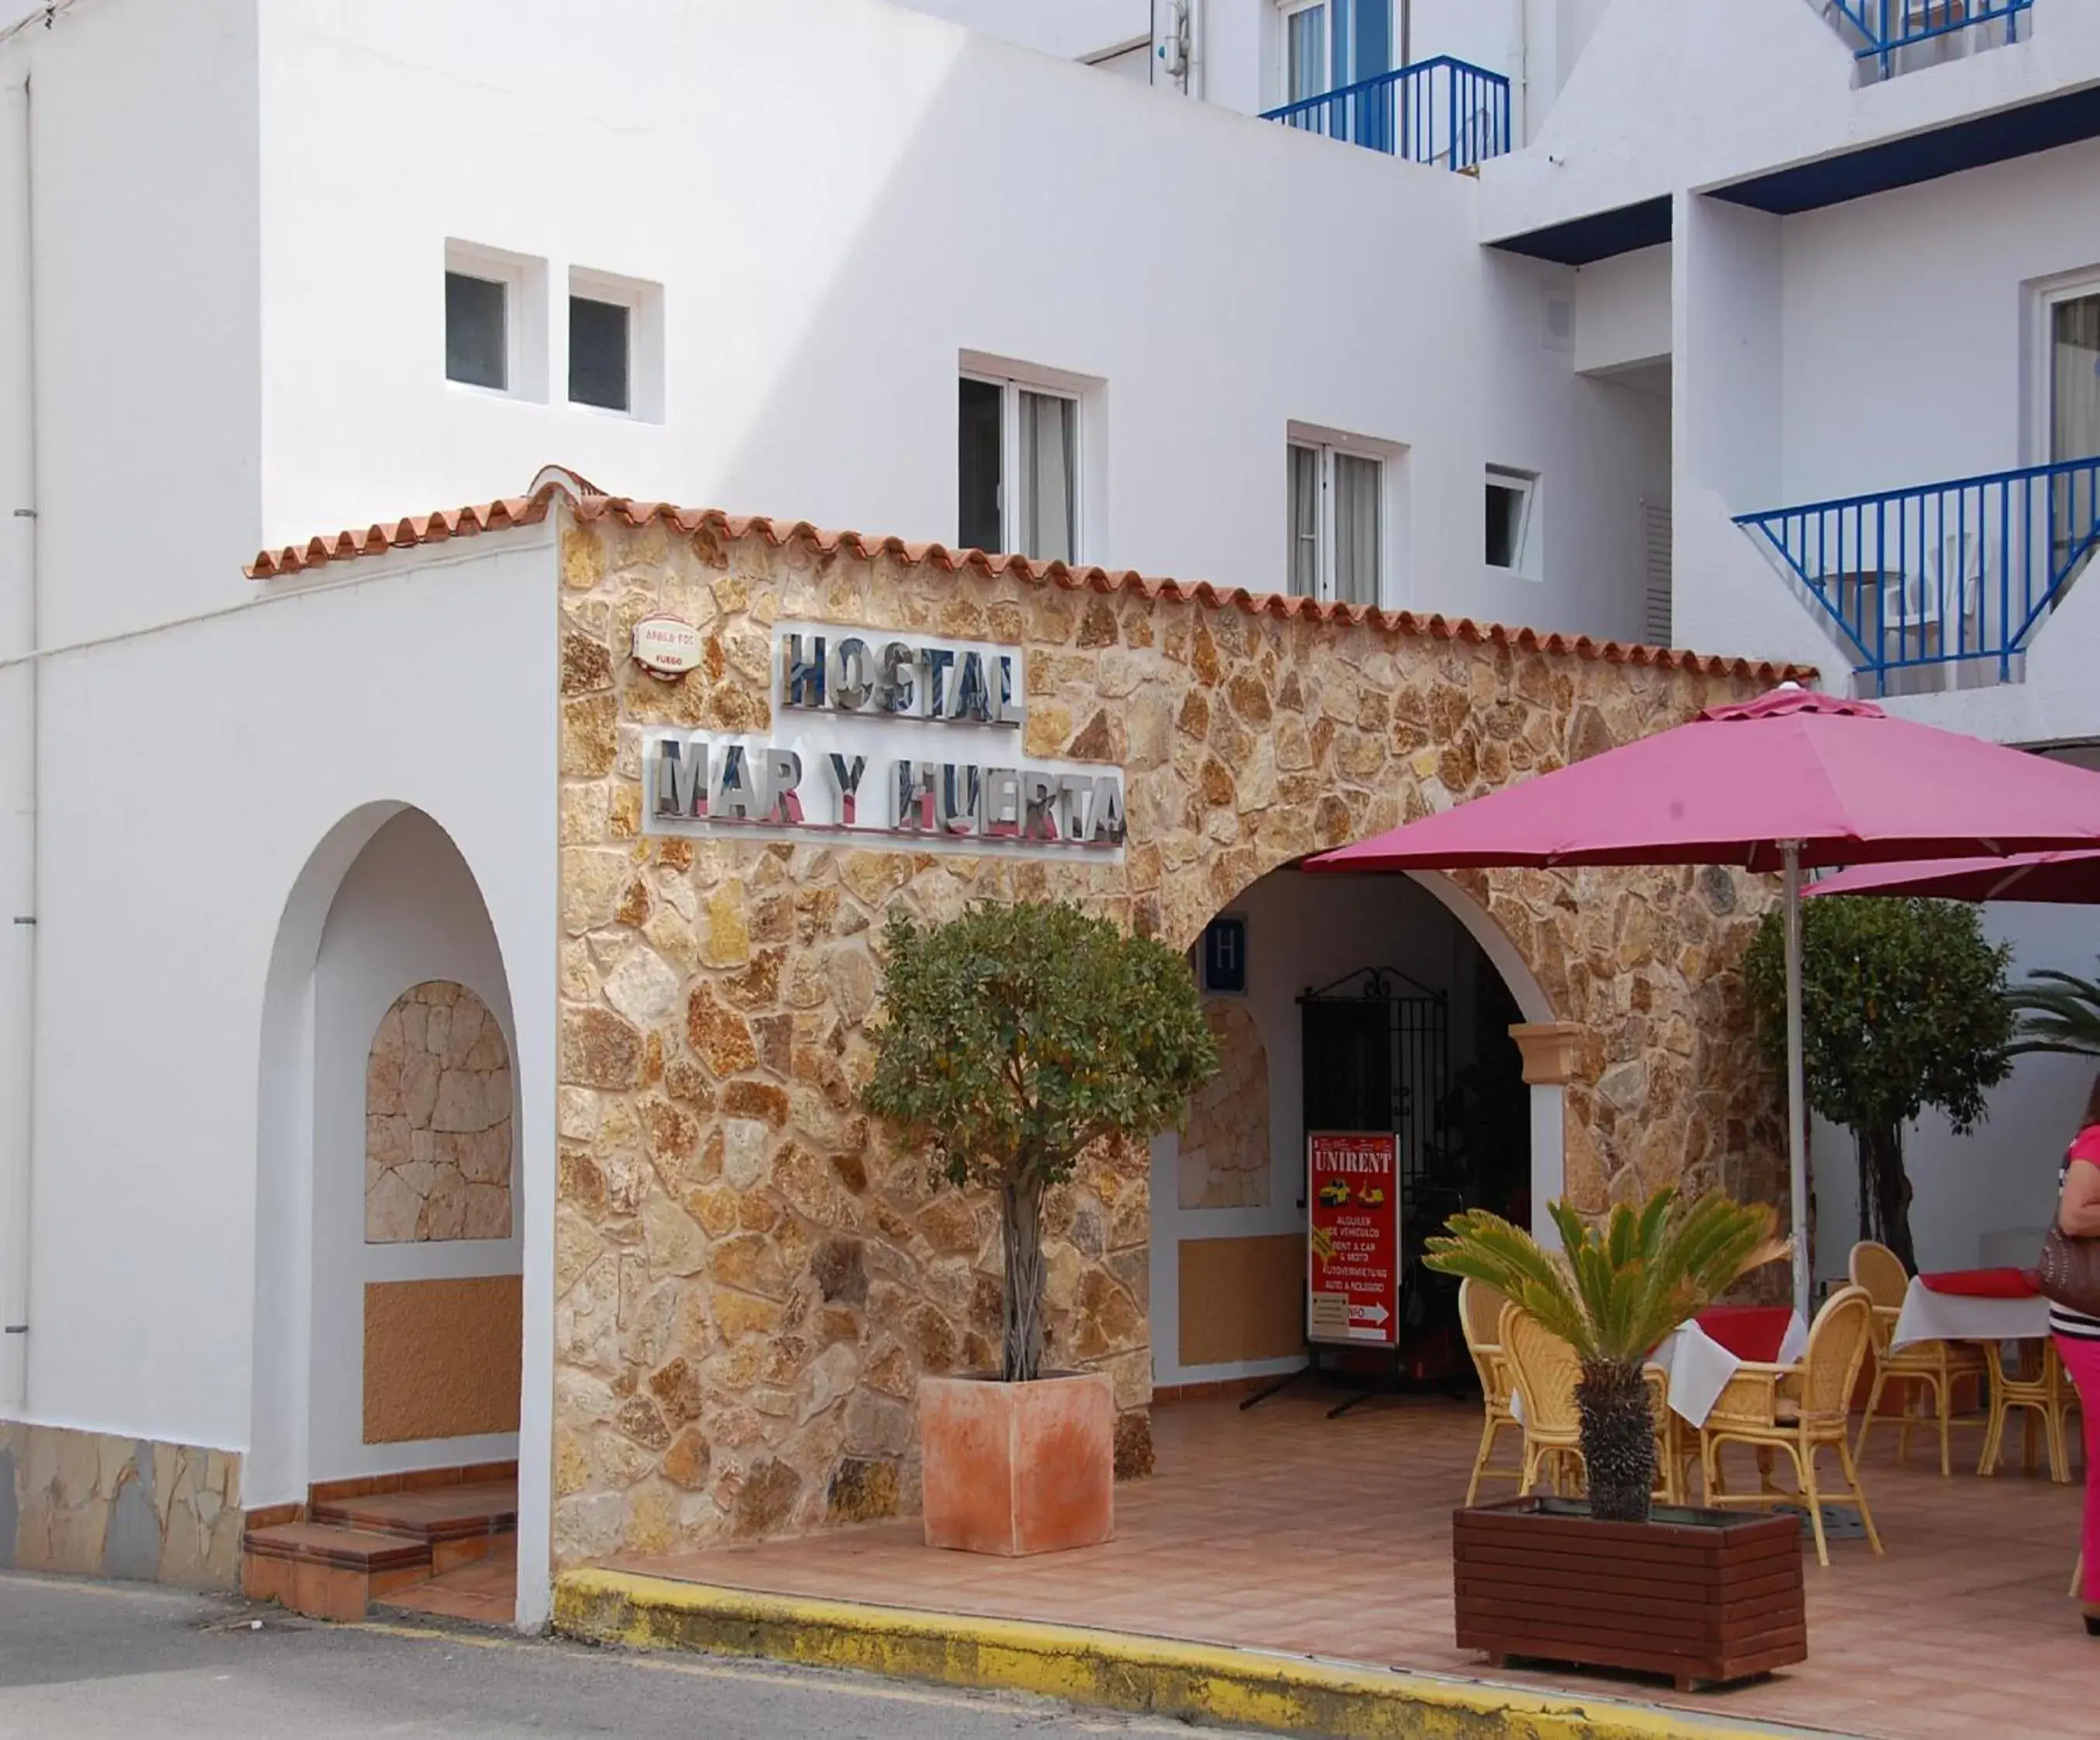 Facade/entrance in Hostal Mar y Huerta